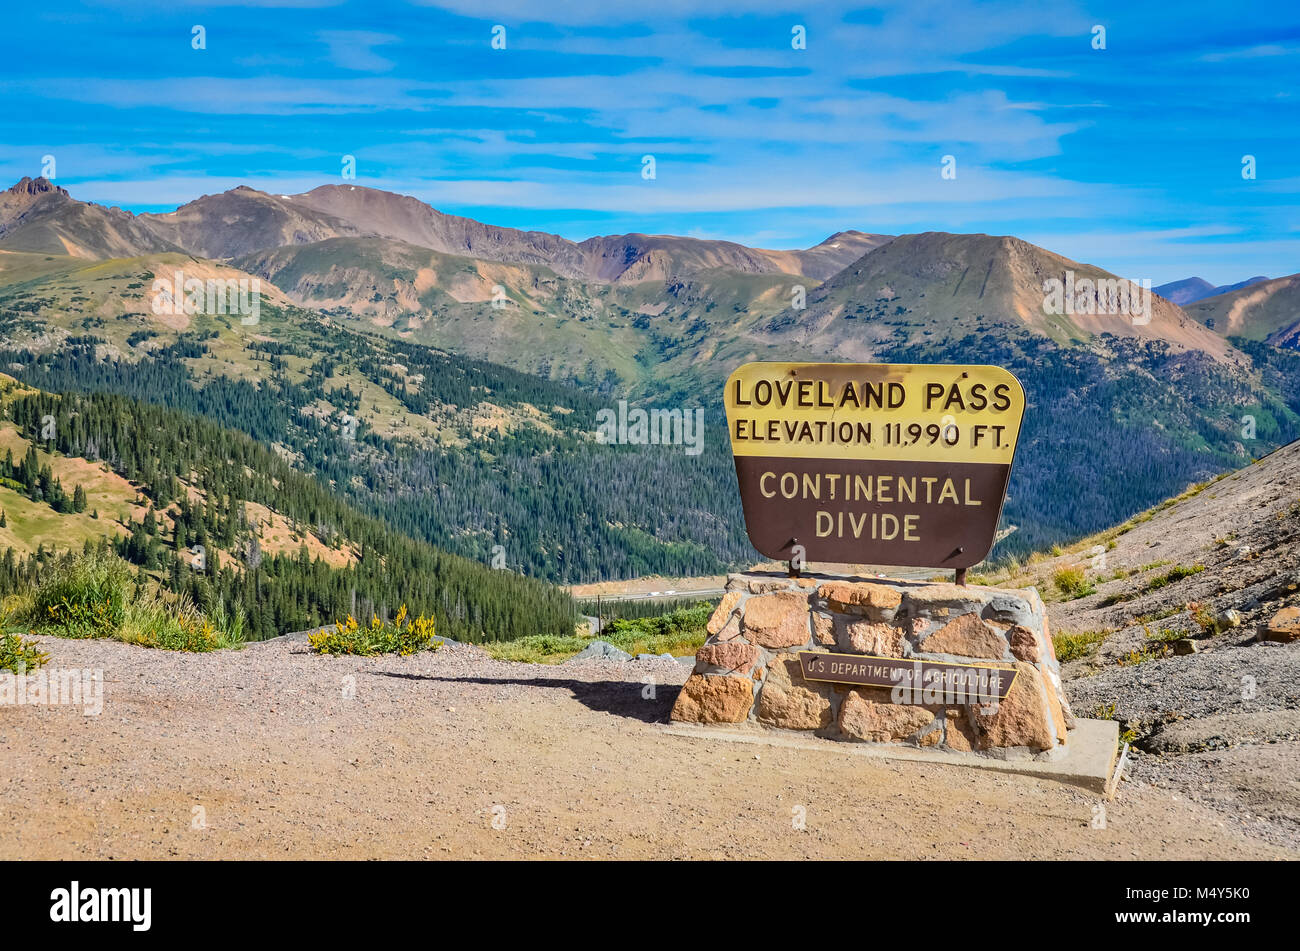 Loveland Pass ist ein hoher Berg im Westen der USA, auf einer Höhe von 11,990 Meter über dem Meeresspiegel in den Rocky Mountains von Colorado. Stockfoto